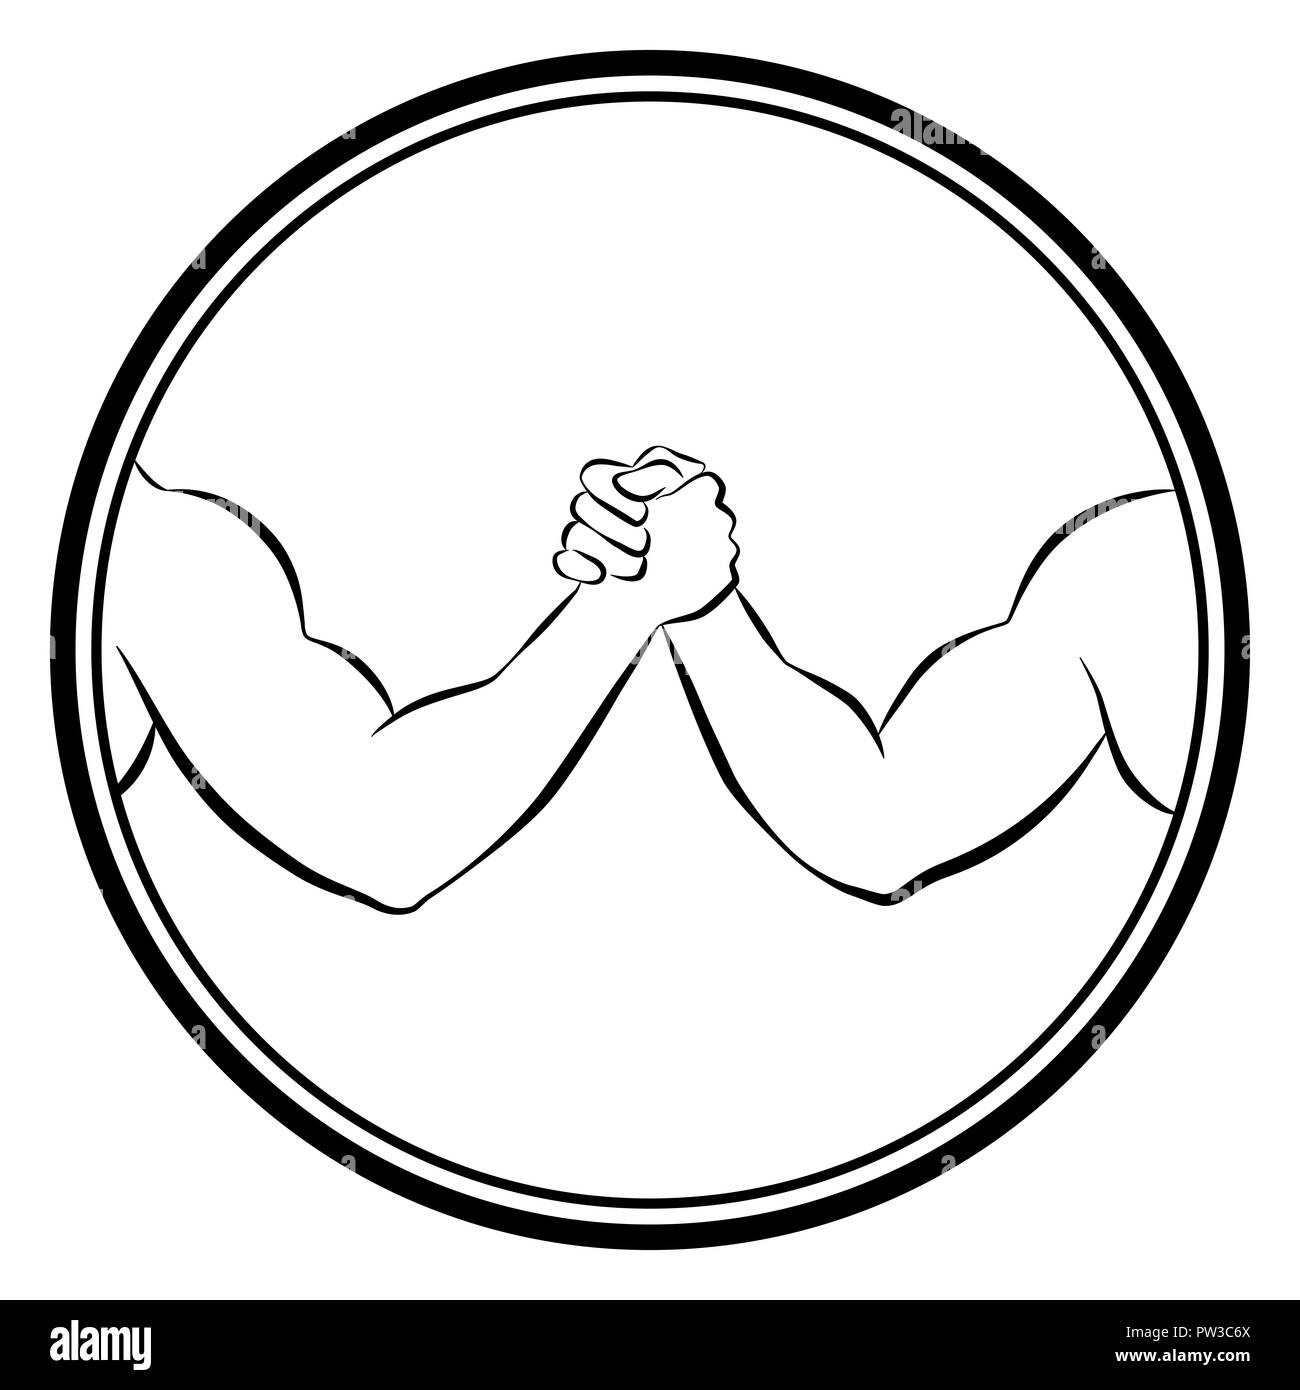 Arm wrestling - concours logo rond contours illustration sur fond blanc. Banque D'Images